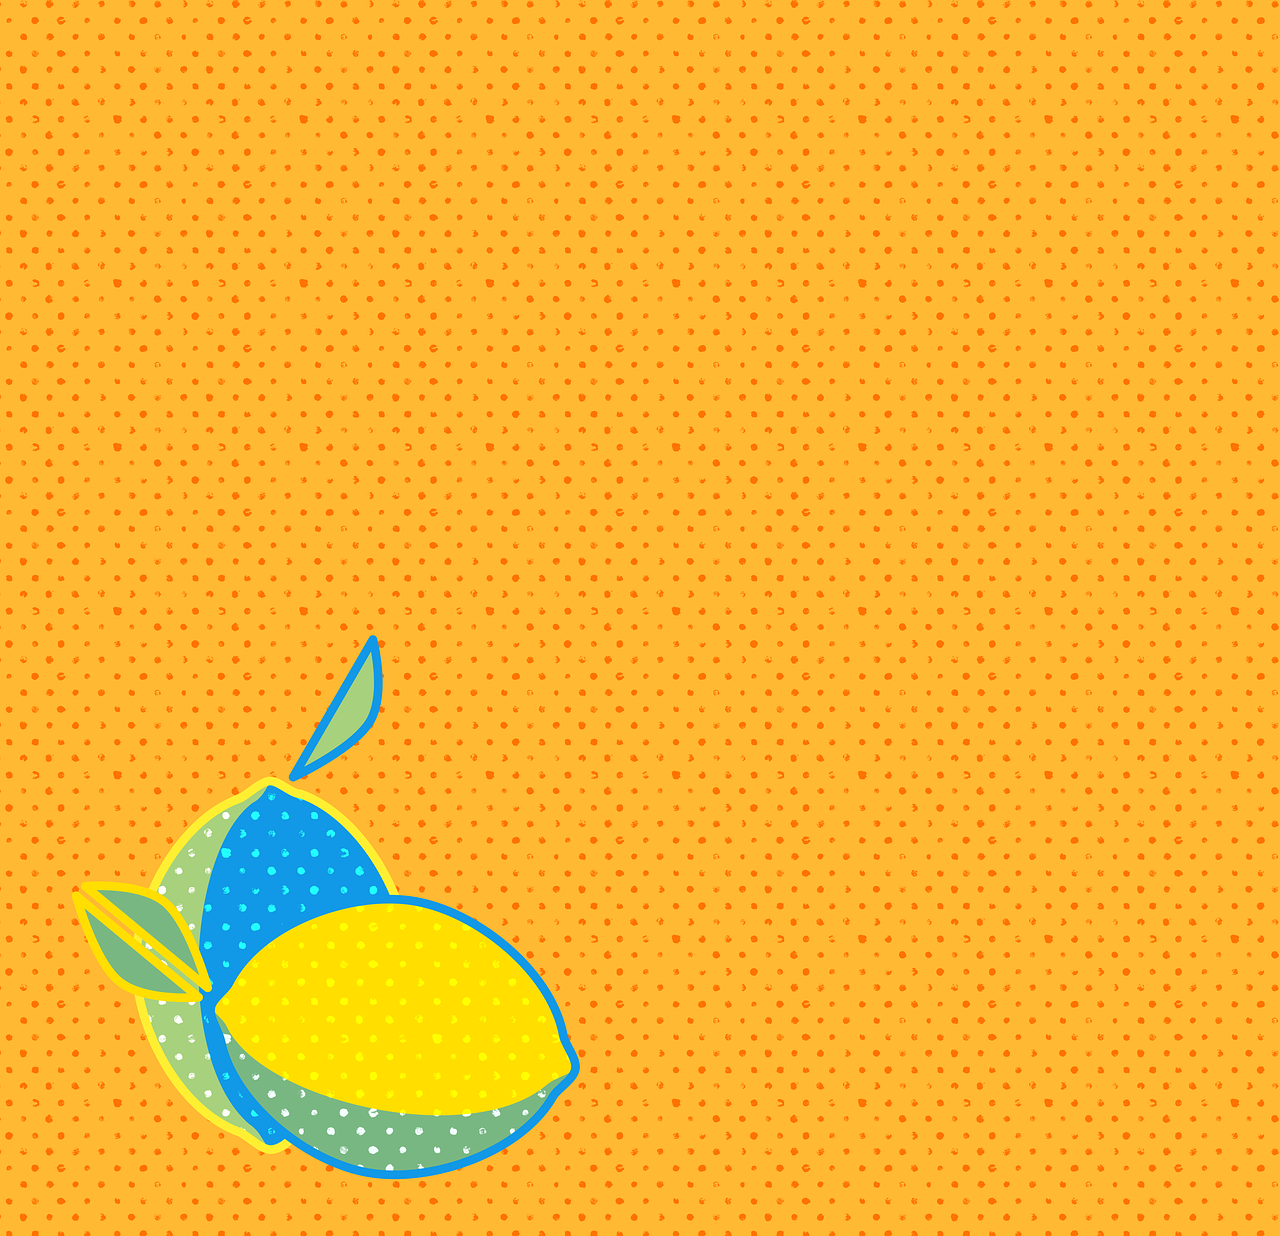 limone  lemon  background free photo